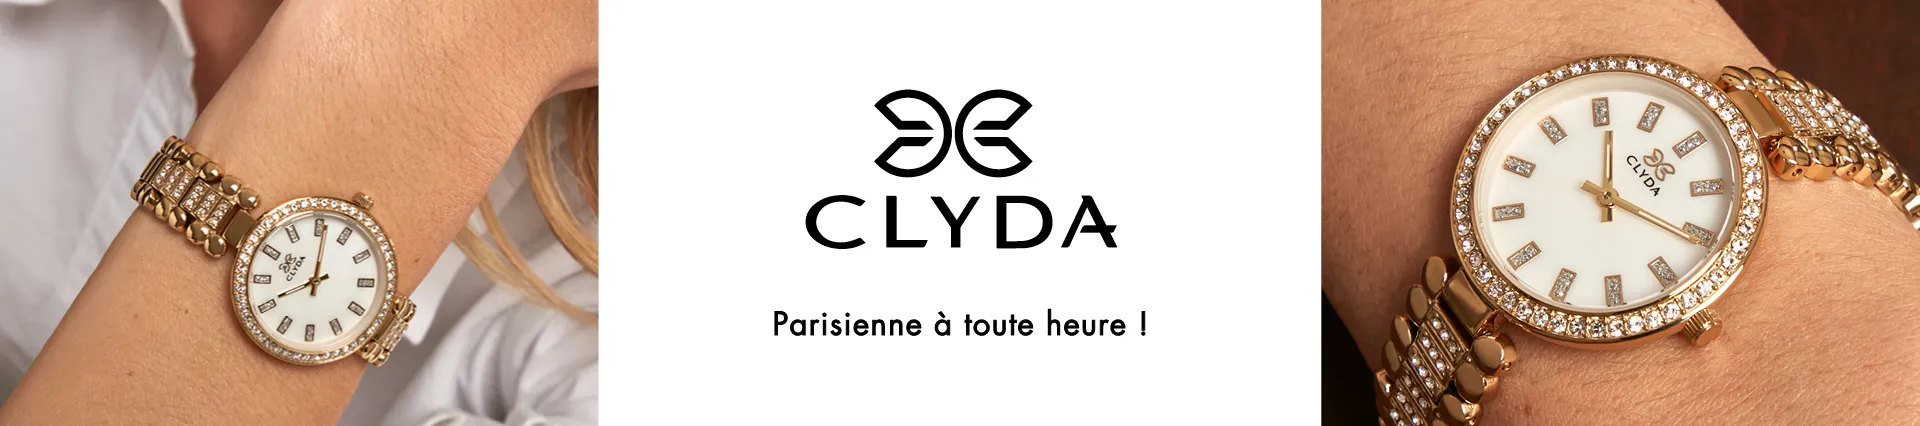 Clyda montres